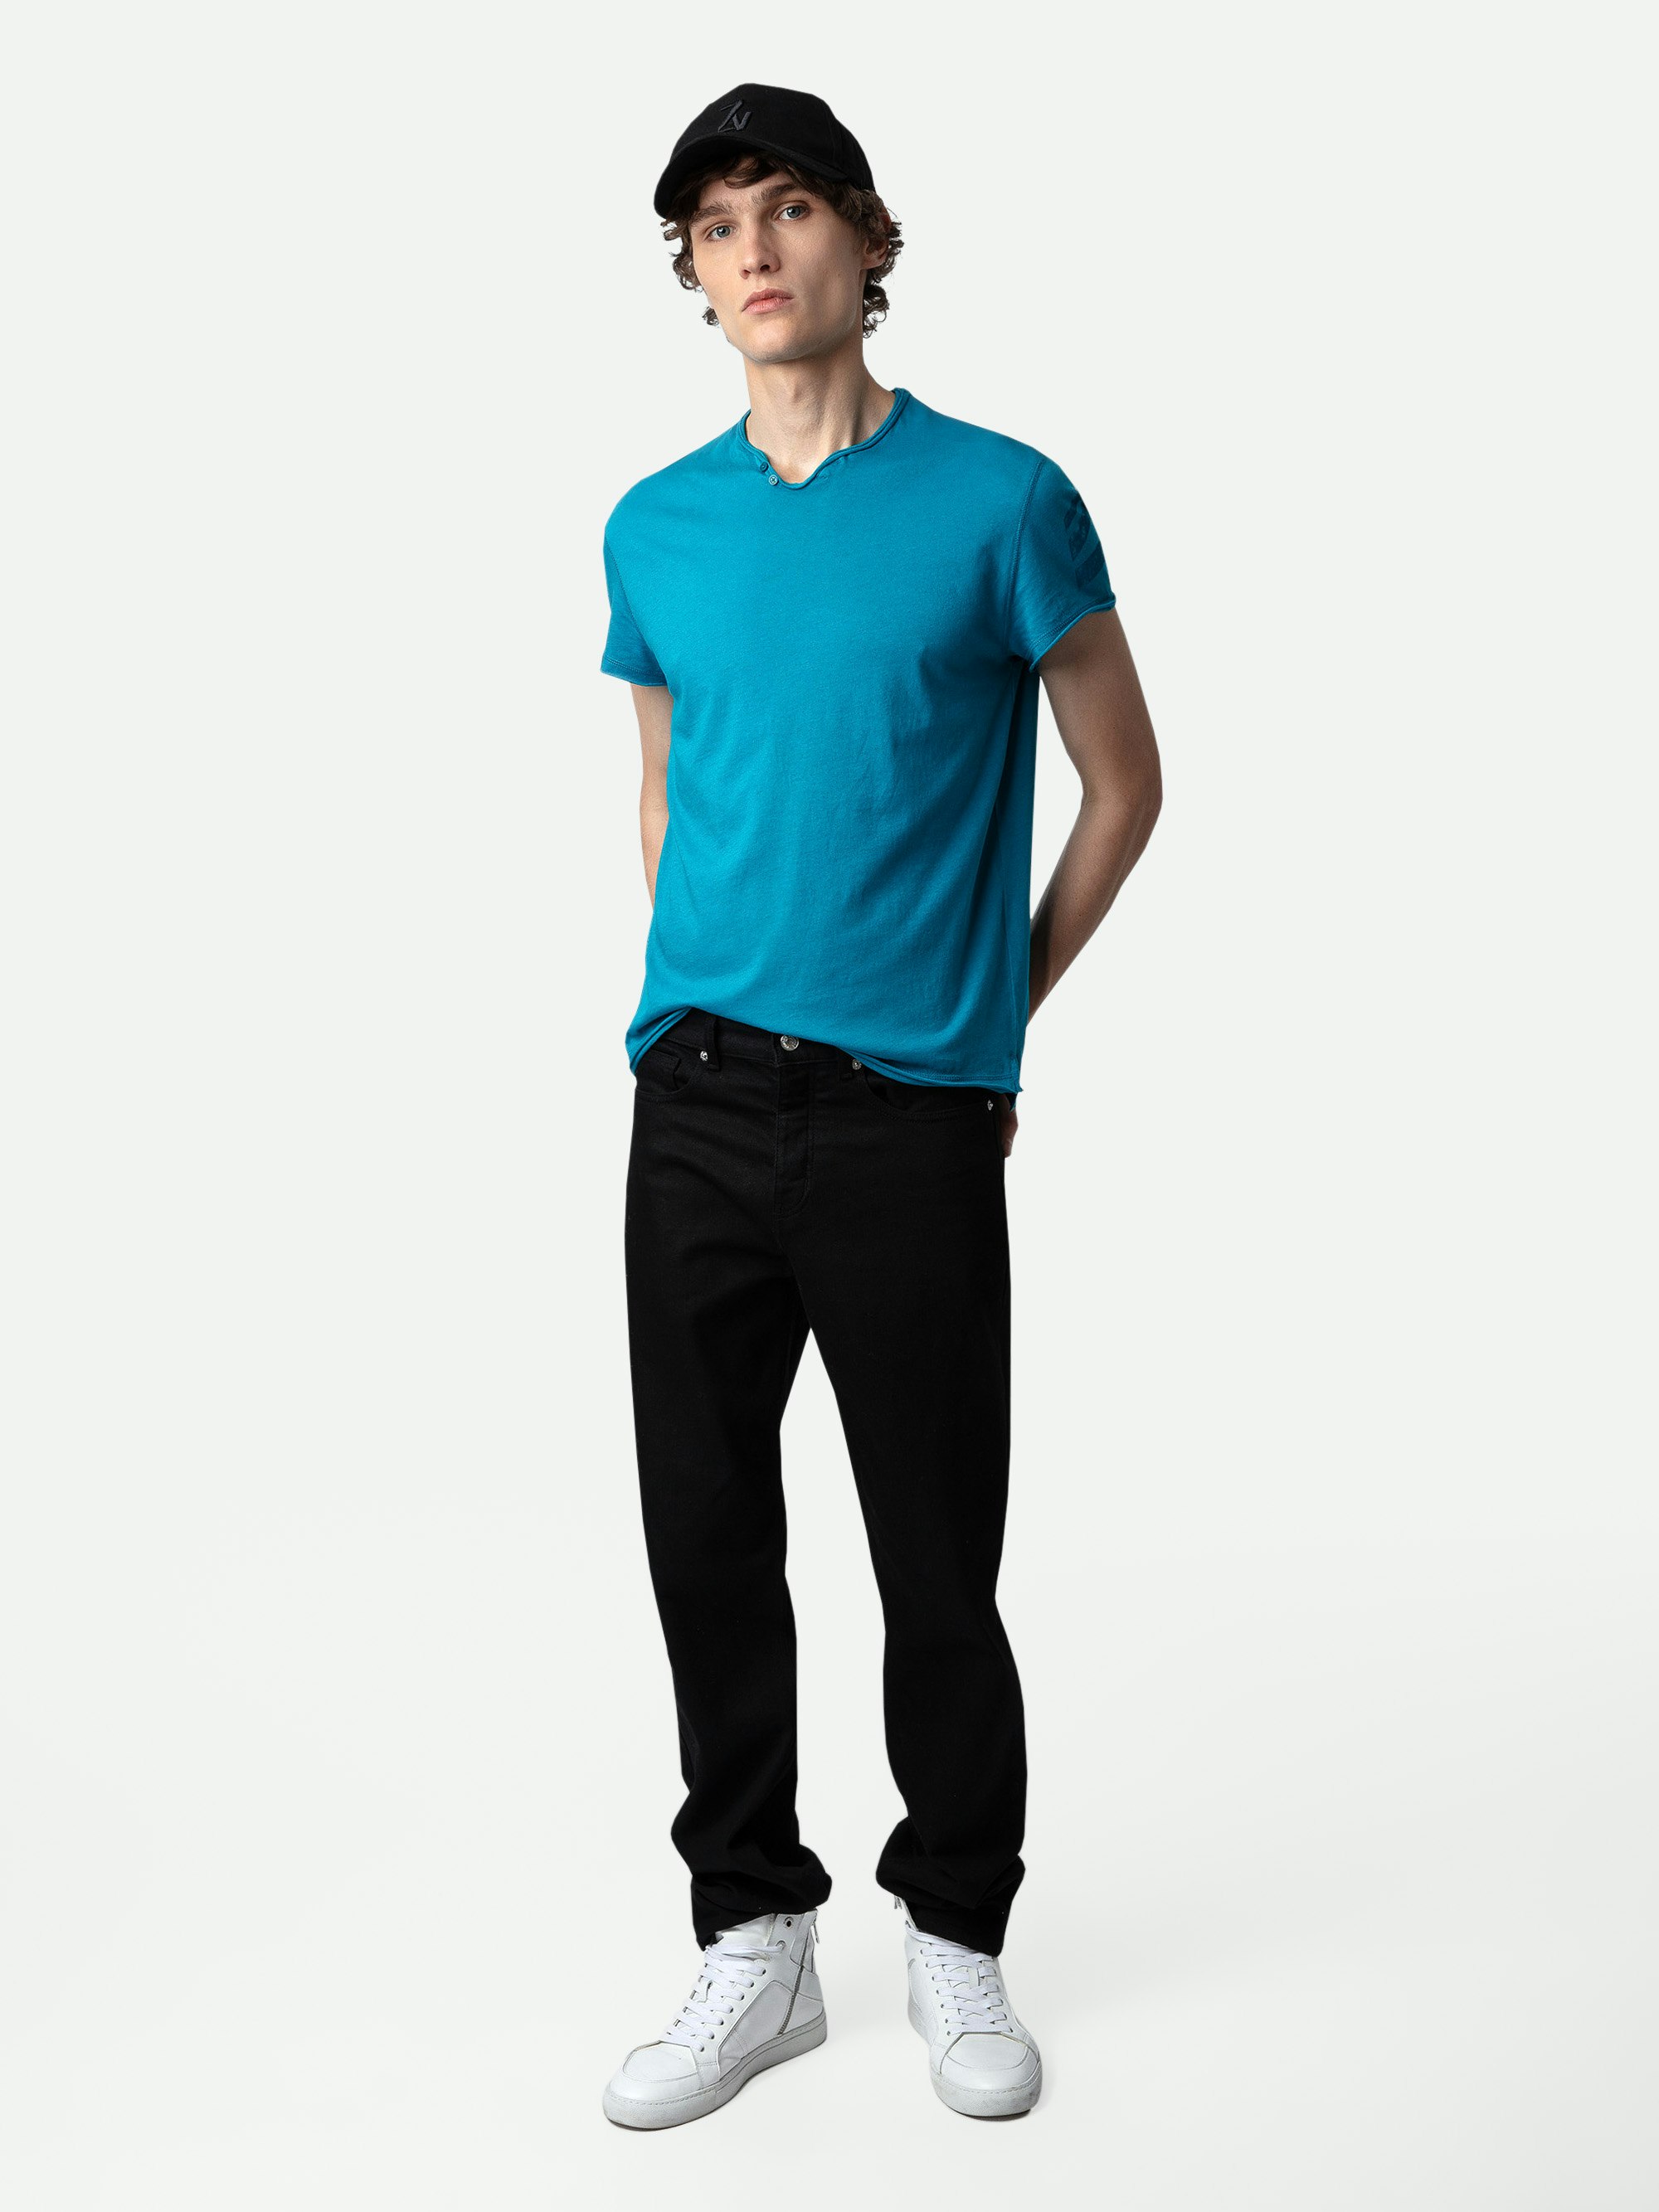 Serafino Monasti Arrow - T-shirt con collo a serafino in cotone turchese con maniche corte e frecce sulla manica sinistra.